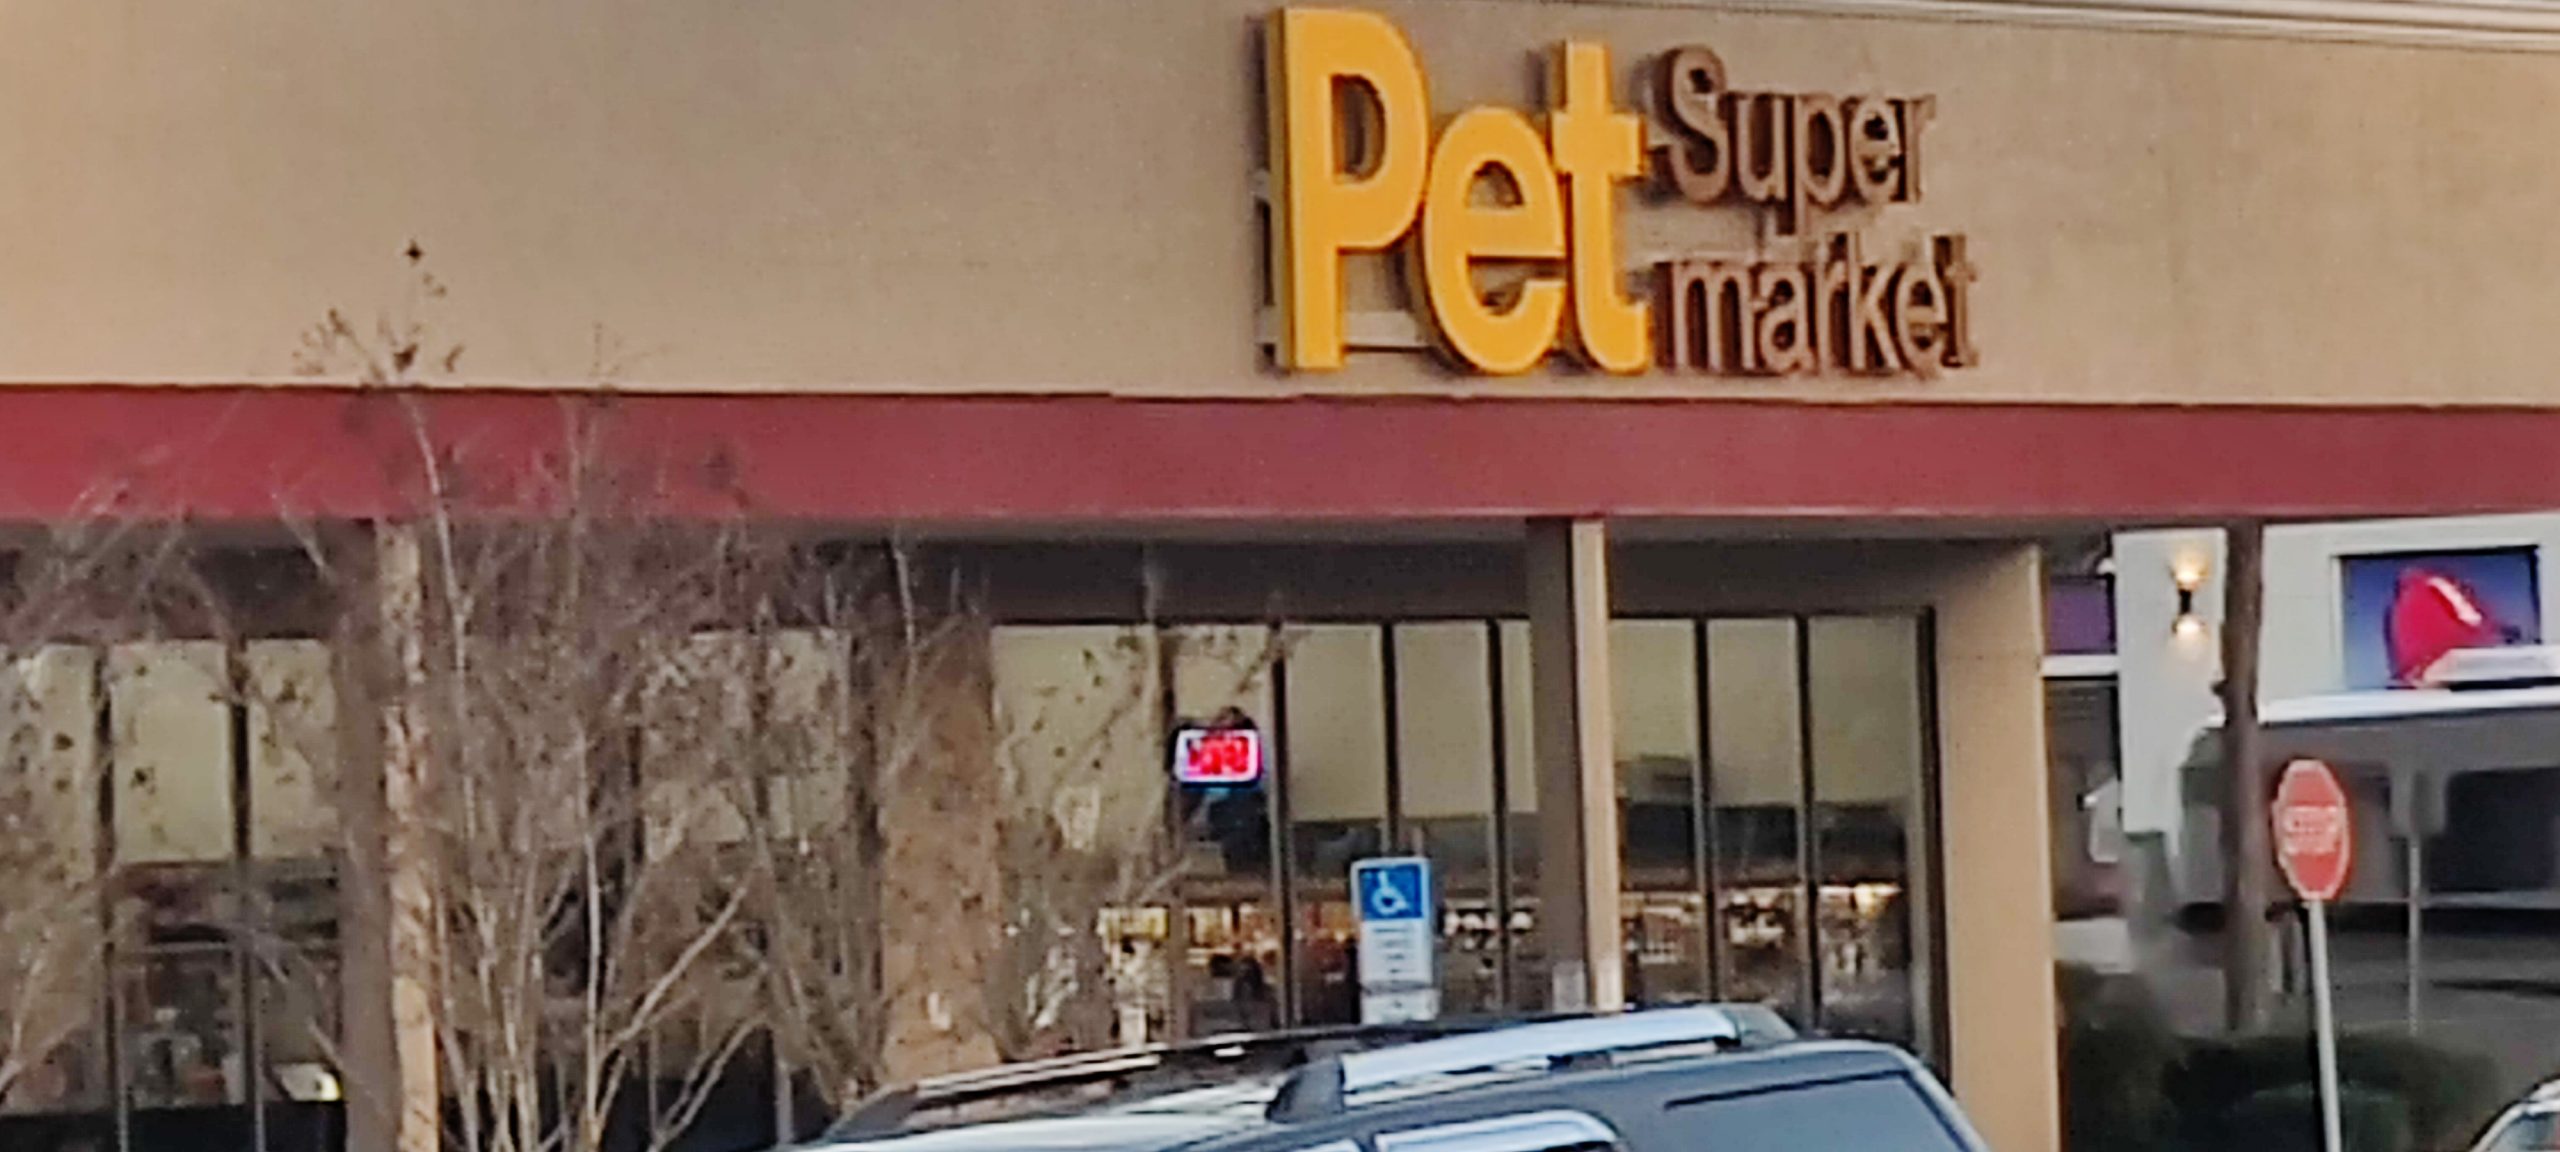 02-14-2022 Pet Super market - New Location